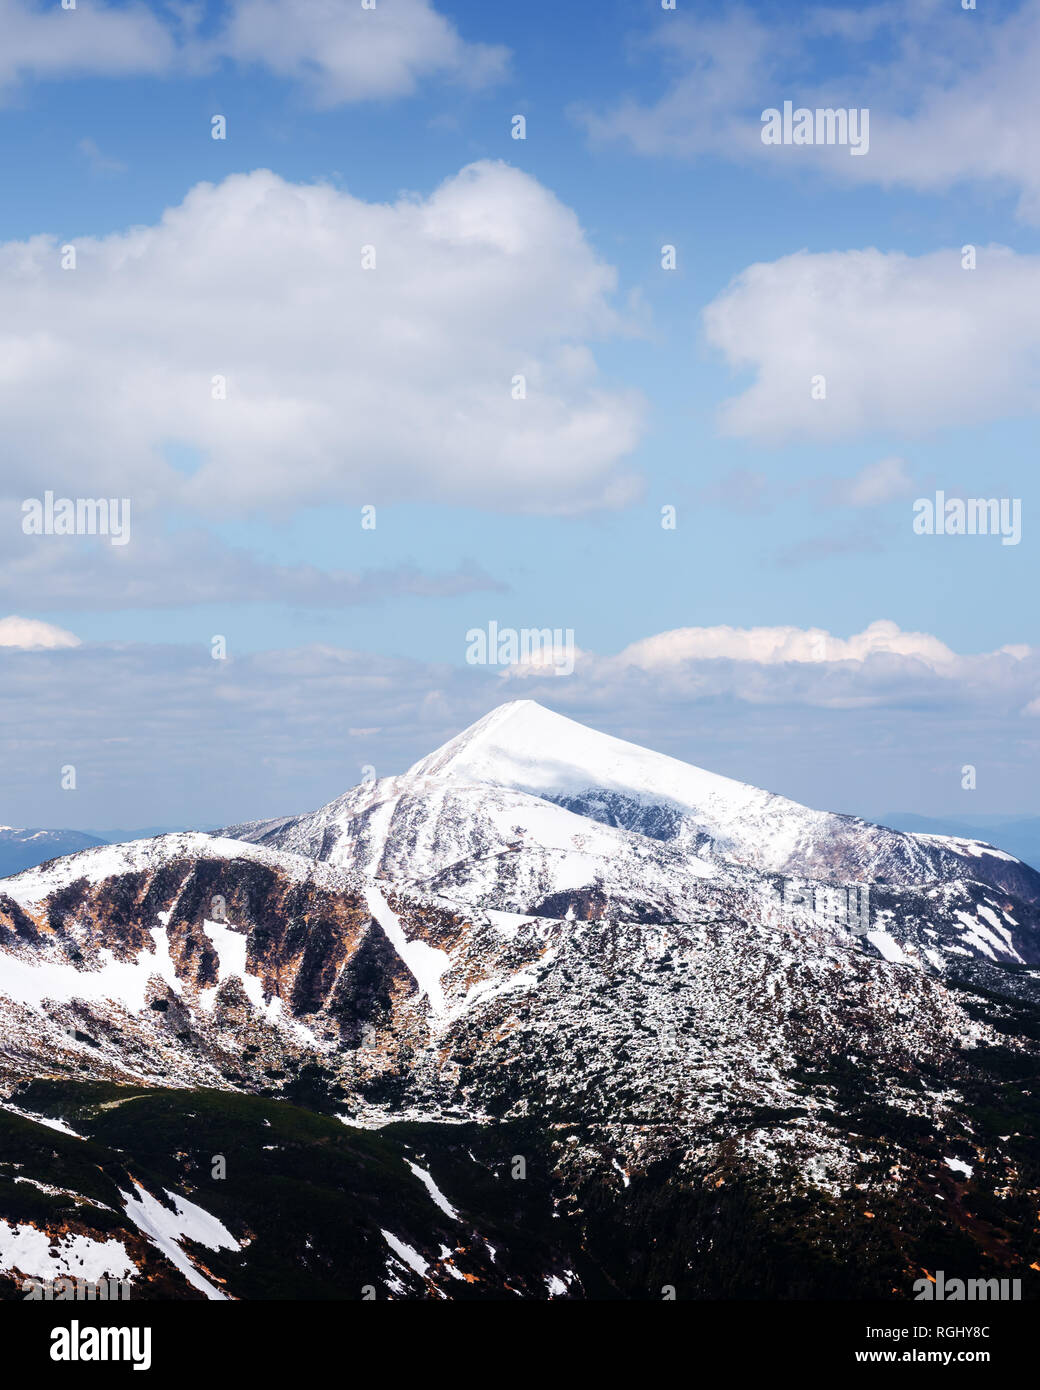 Vista de las colinas pedregosas con la nieve y el cielo azul. Dramática escena de primavera. Fotografía paisajística Foto de stock